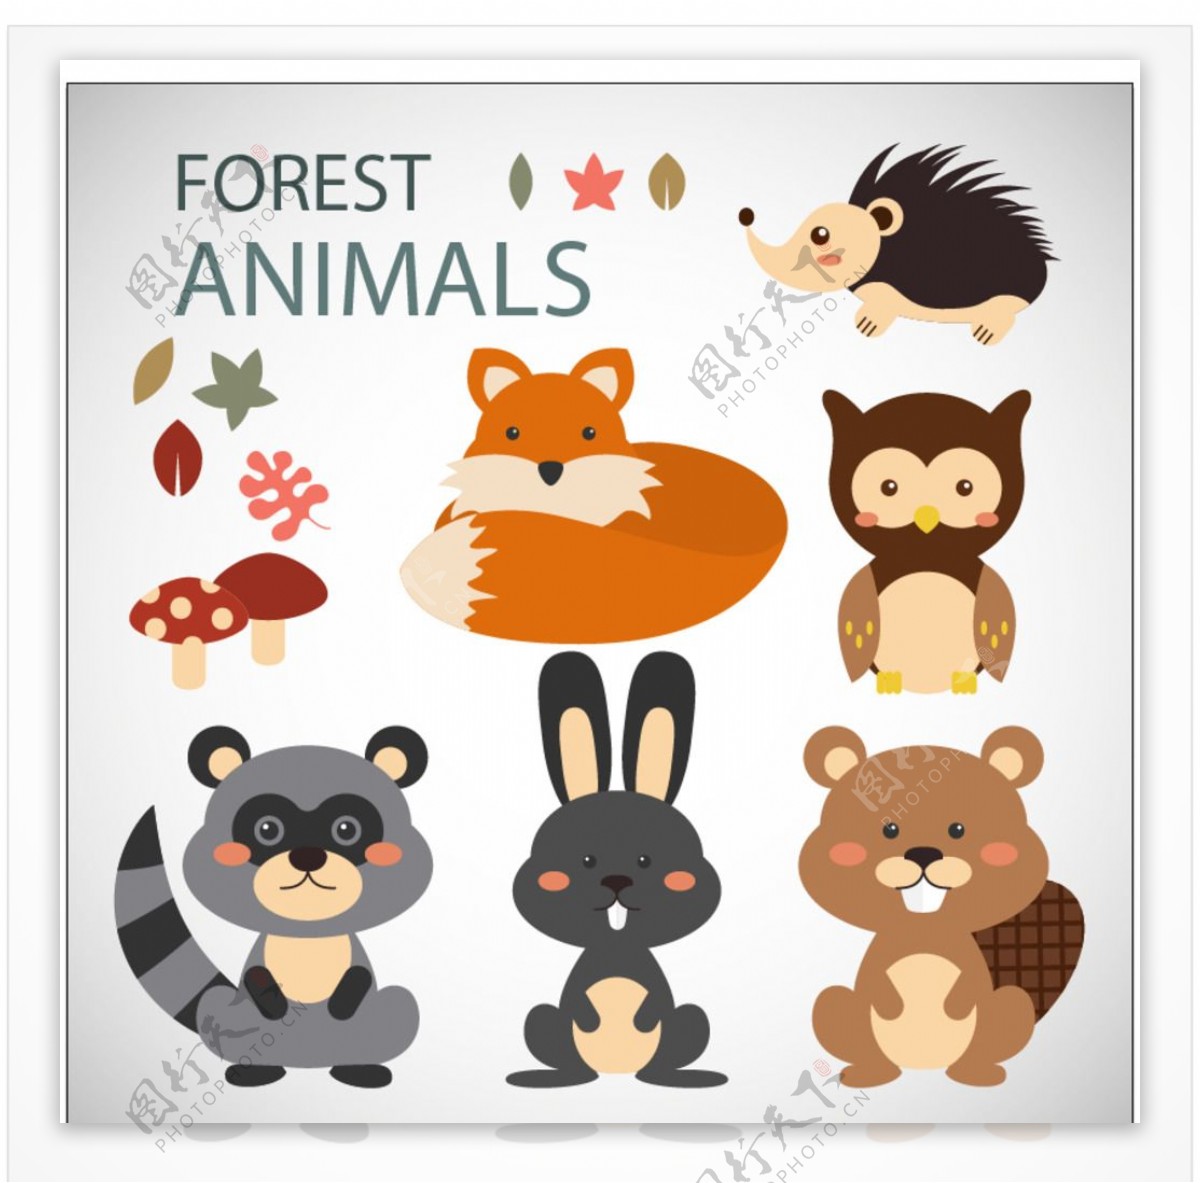 可爱的森林动物